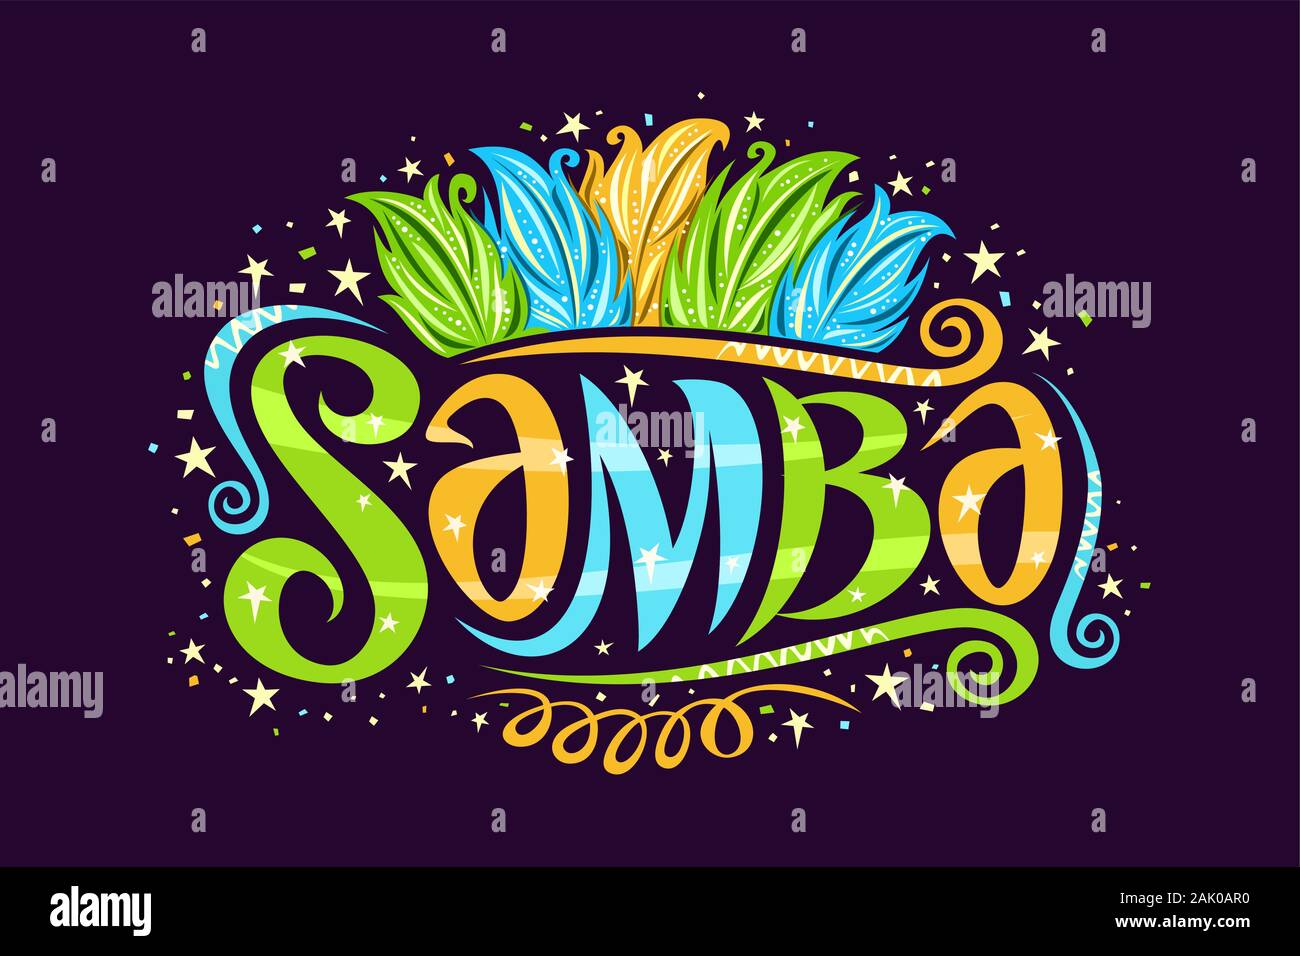 Logo Vector pour Samba brésilienne, decorative sign board pour l'école de samba avec illustration de plumes d'oiseaux de couleurs drapeau brésilien, les boucles et les étoiles, Illustration de Vecteur